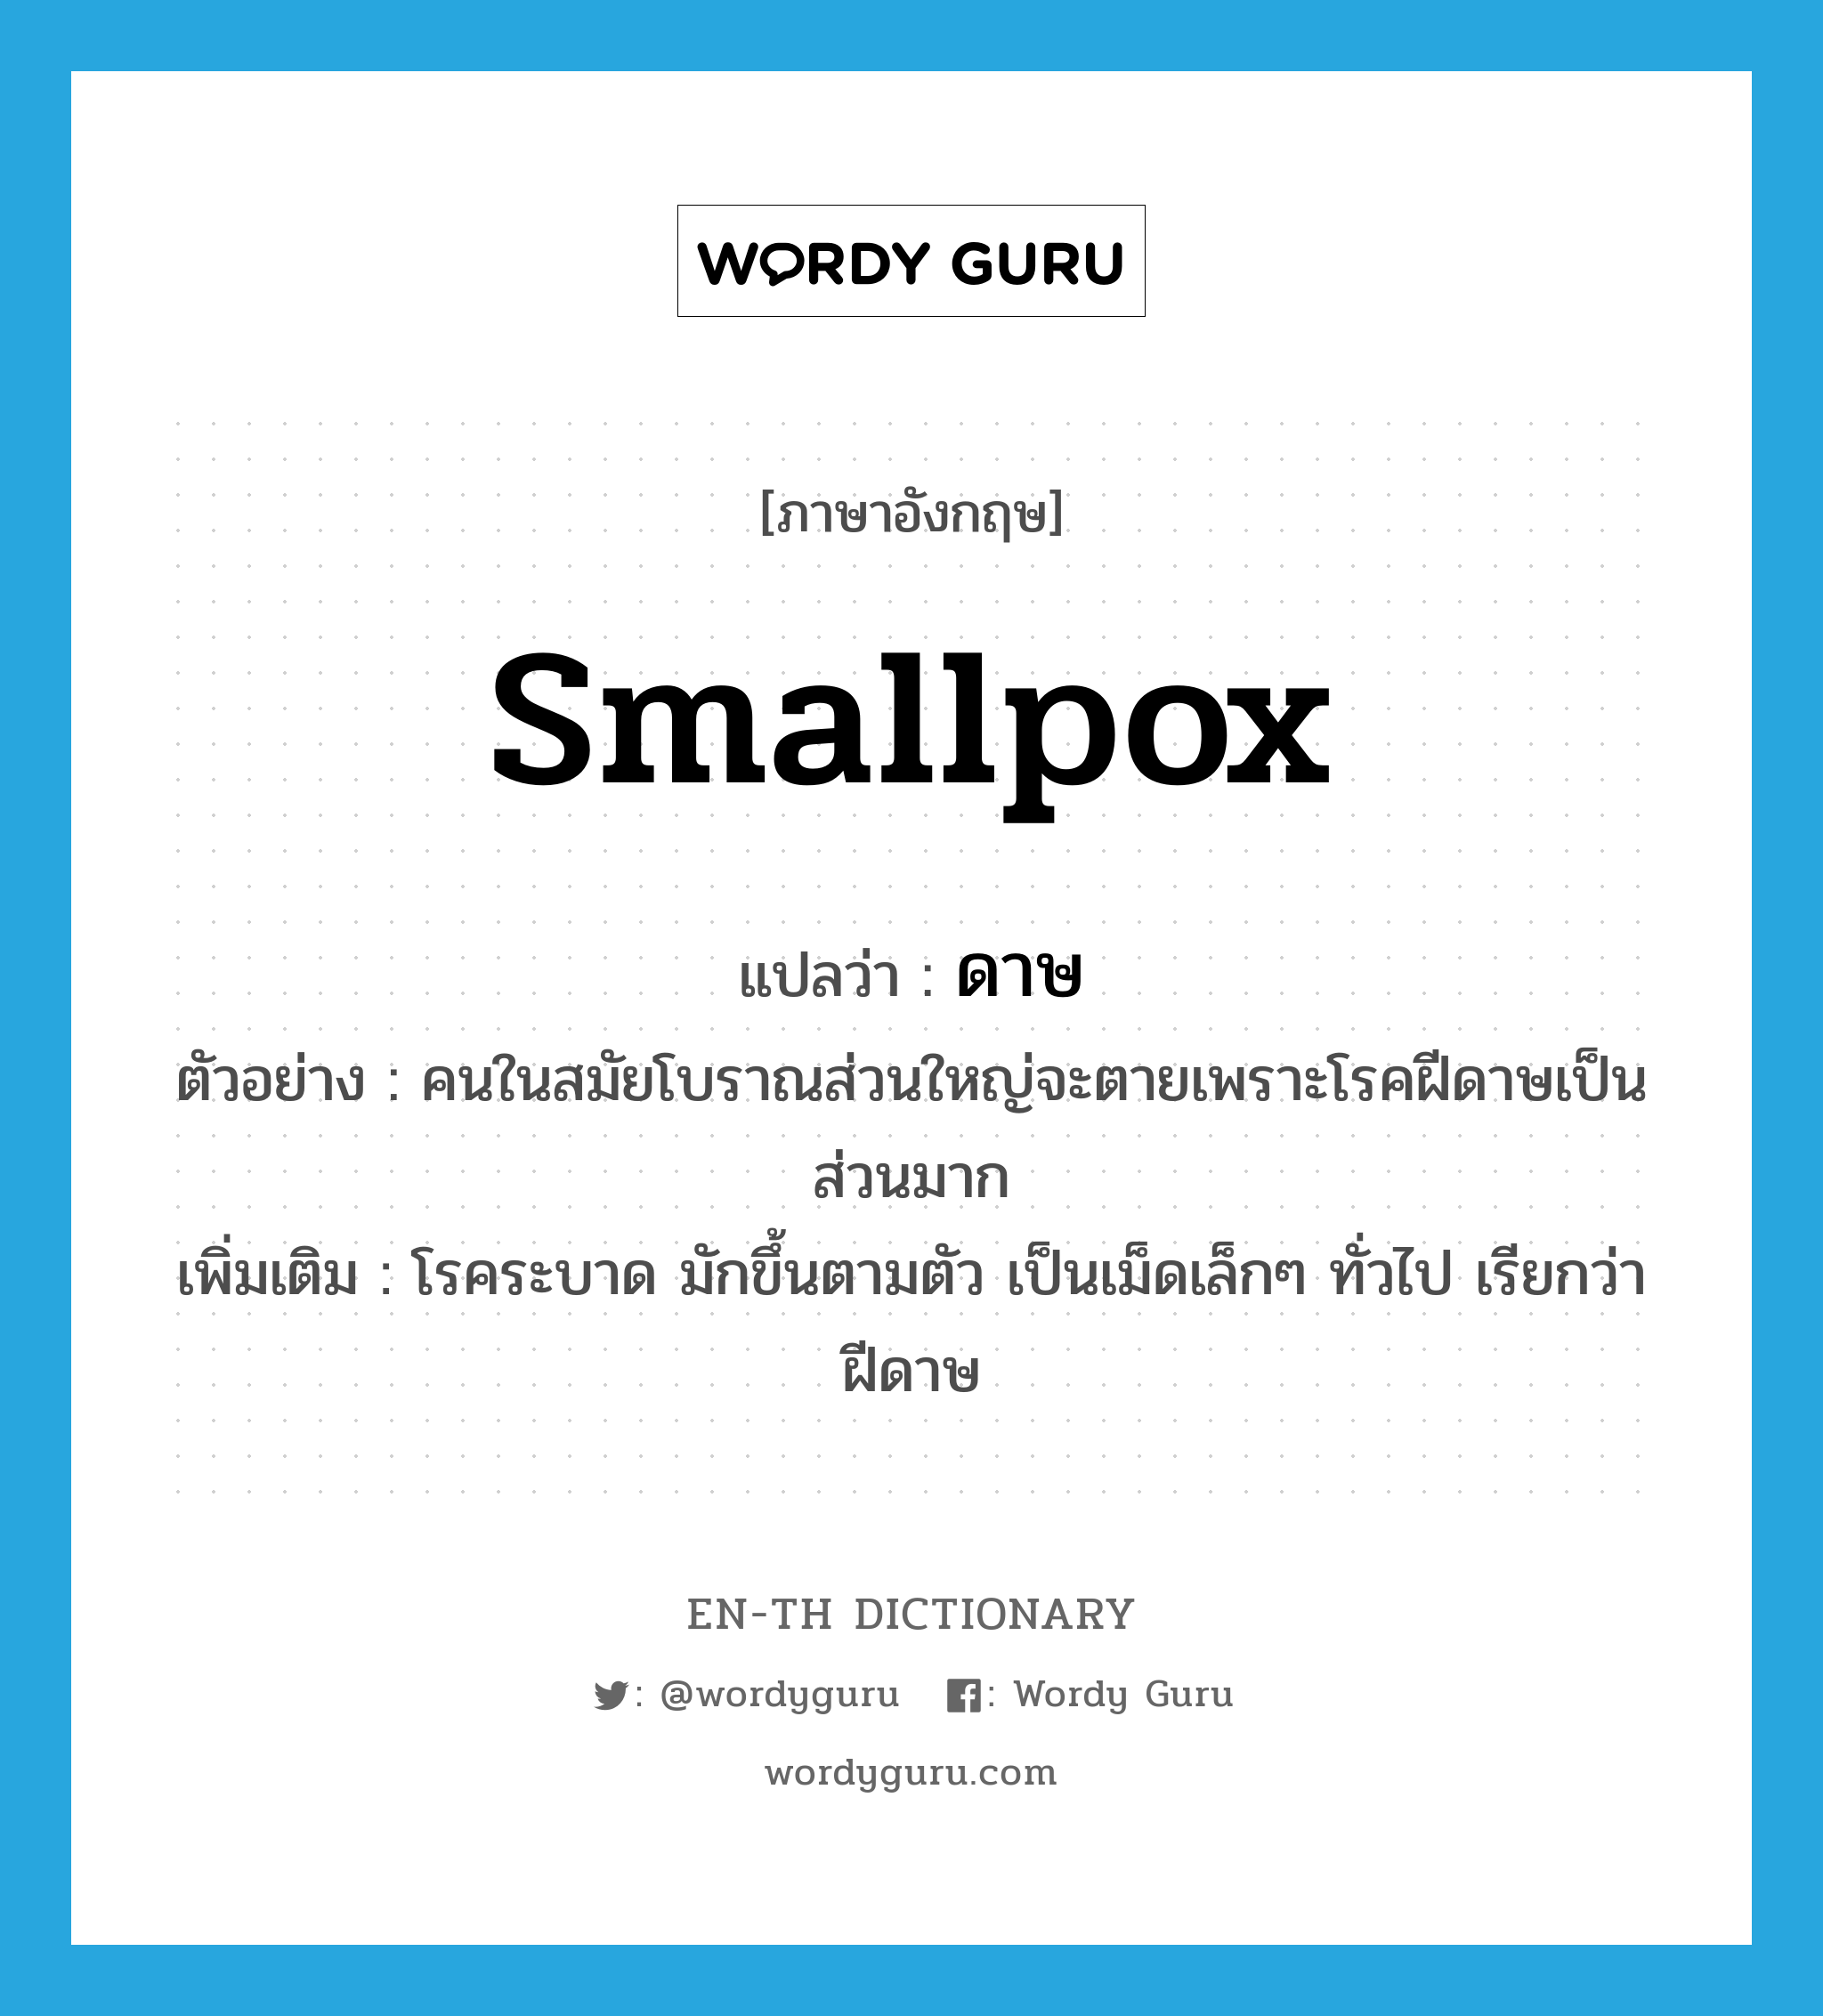 smallpox แปลว่า?, คำศัพท์ภาษาอังกฤษ smallpox แปลว่า ดาษ ประเภท N ตัวอย่าง คนในสมัยโบราณส่วนใหญ่จะตายเพราะโรคฝีดาษเป็นส่วนมาก เพิ่มเติม โรคระบาด มักขึ้นตามตัว เป็นเม็ดเล็กๆ ทั่วไป เรียกว่า ฝีดาษ หมวด N